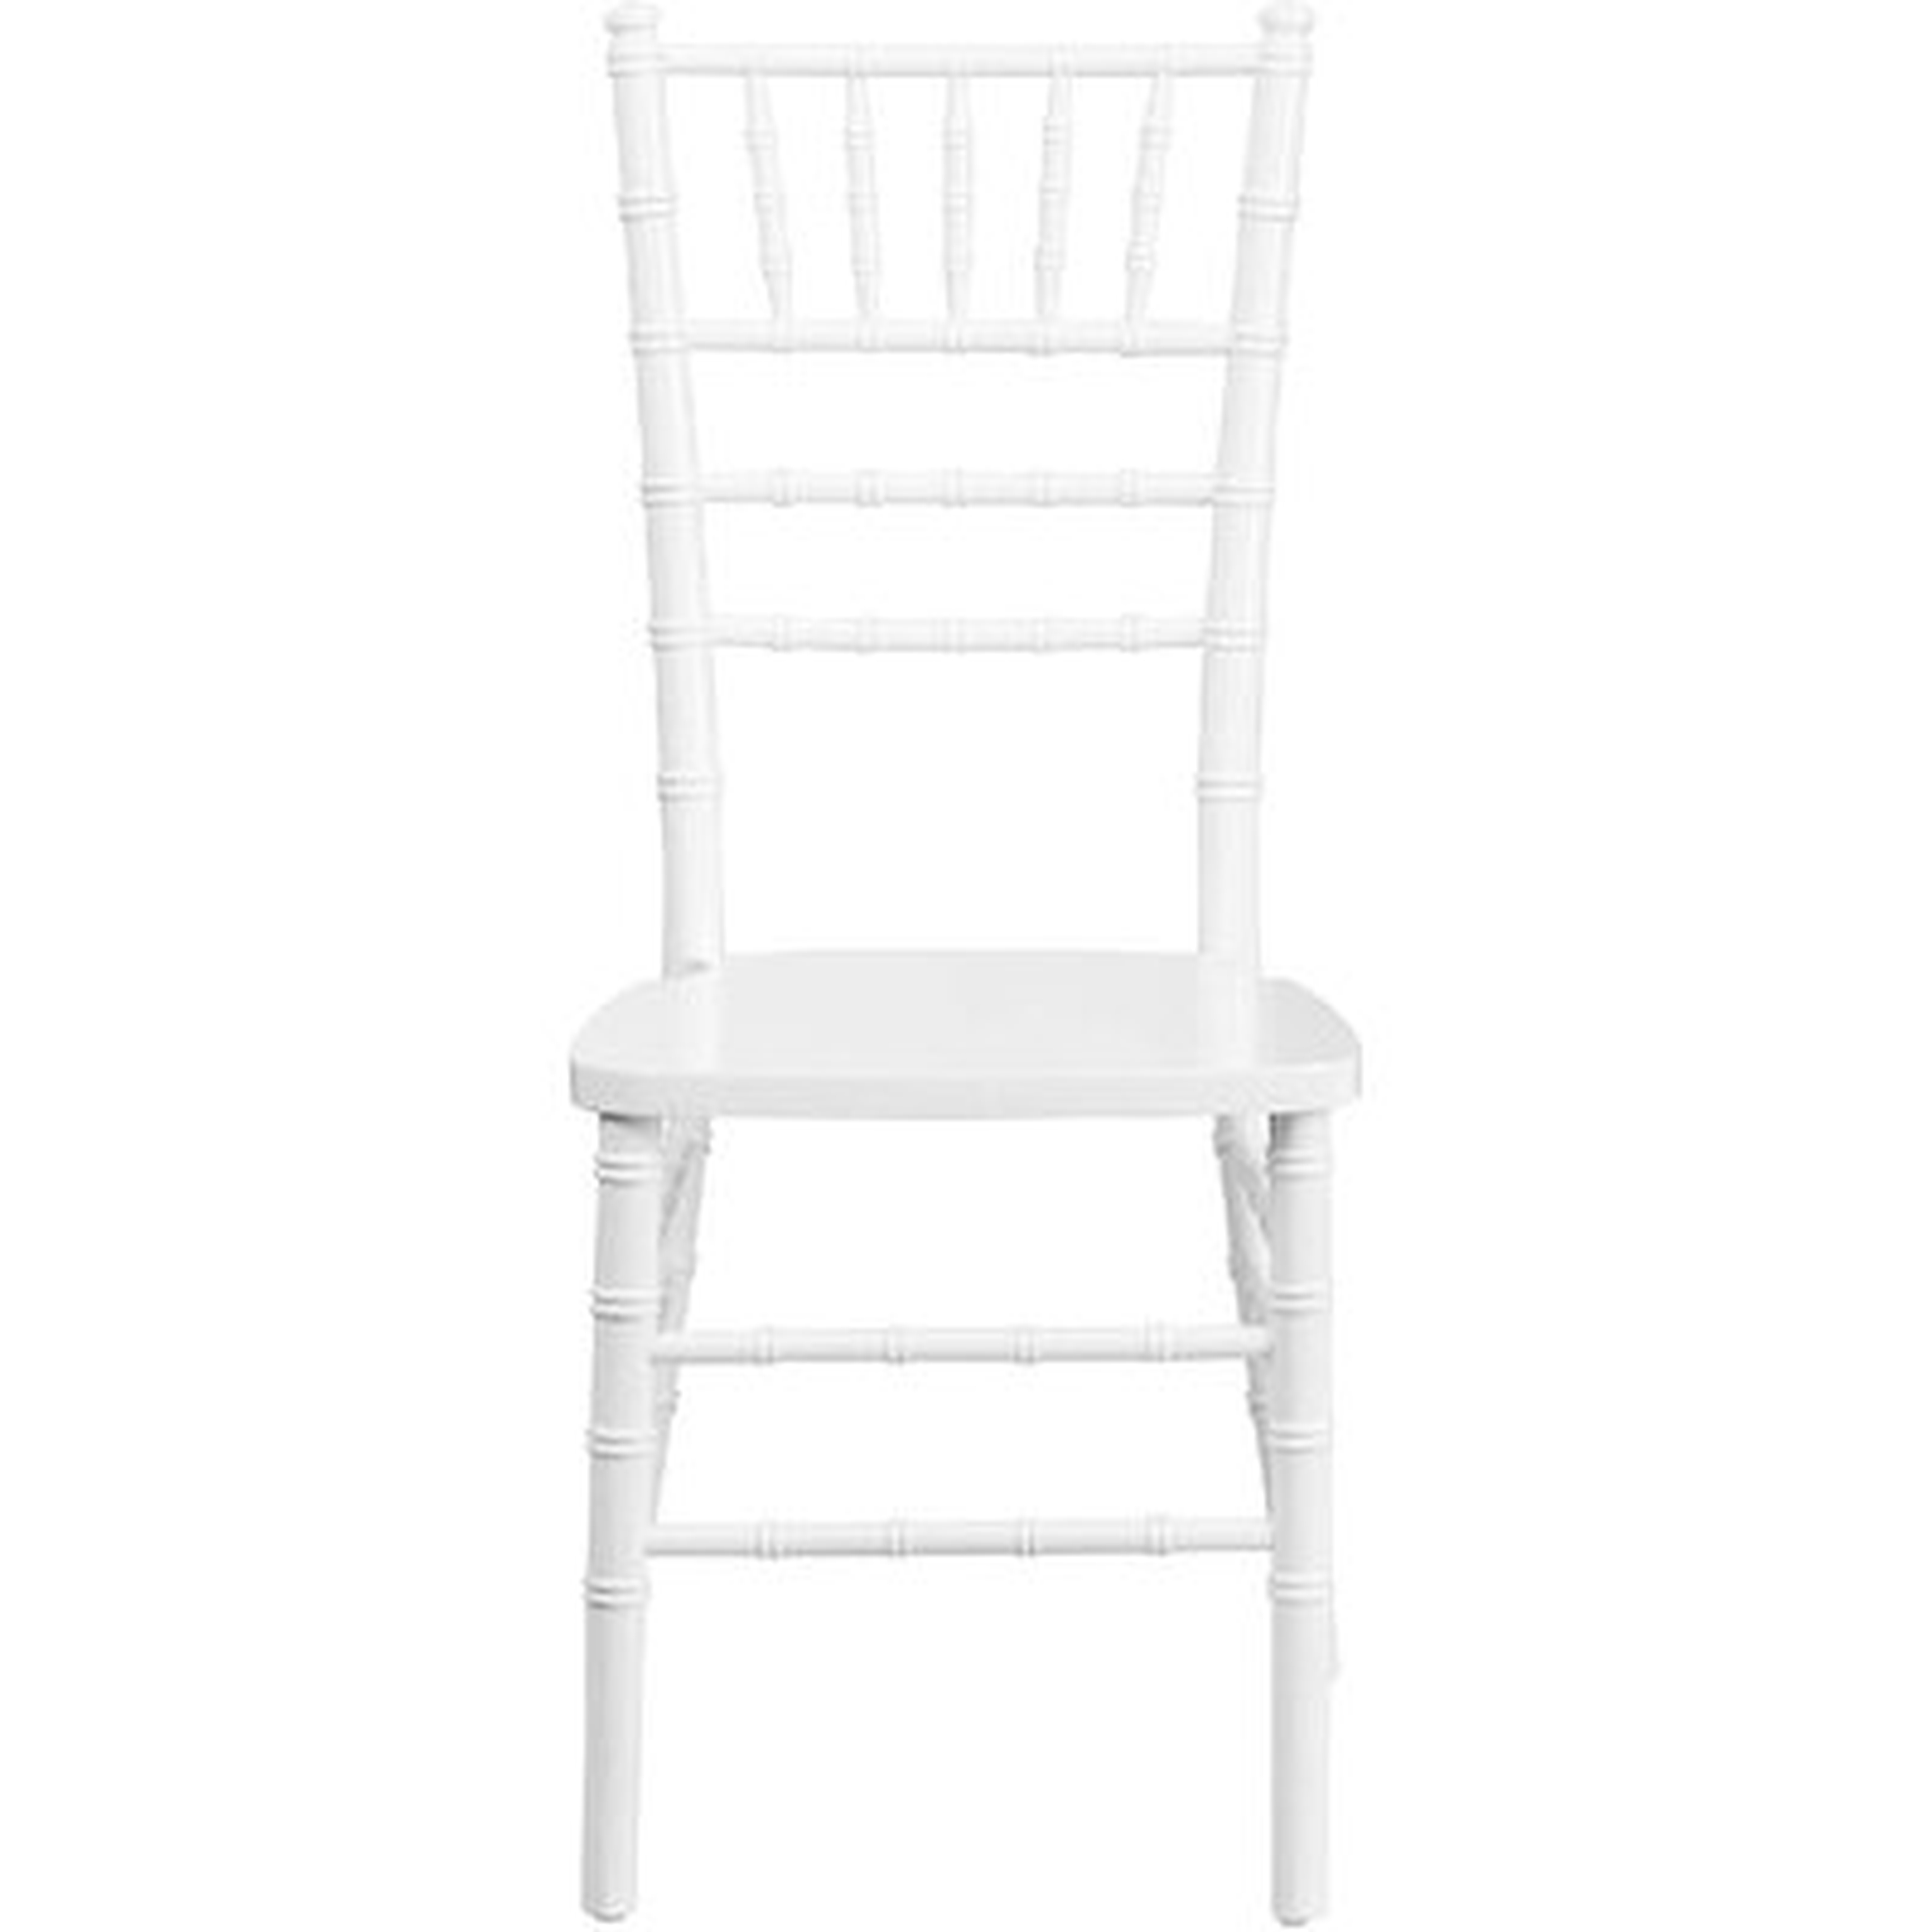 Chair. - Wayfair